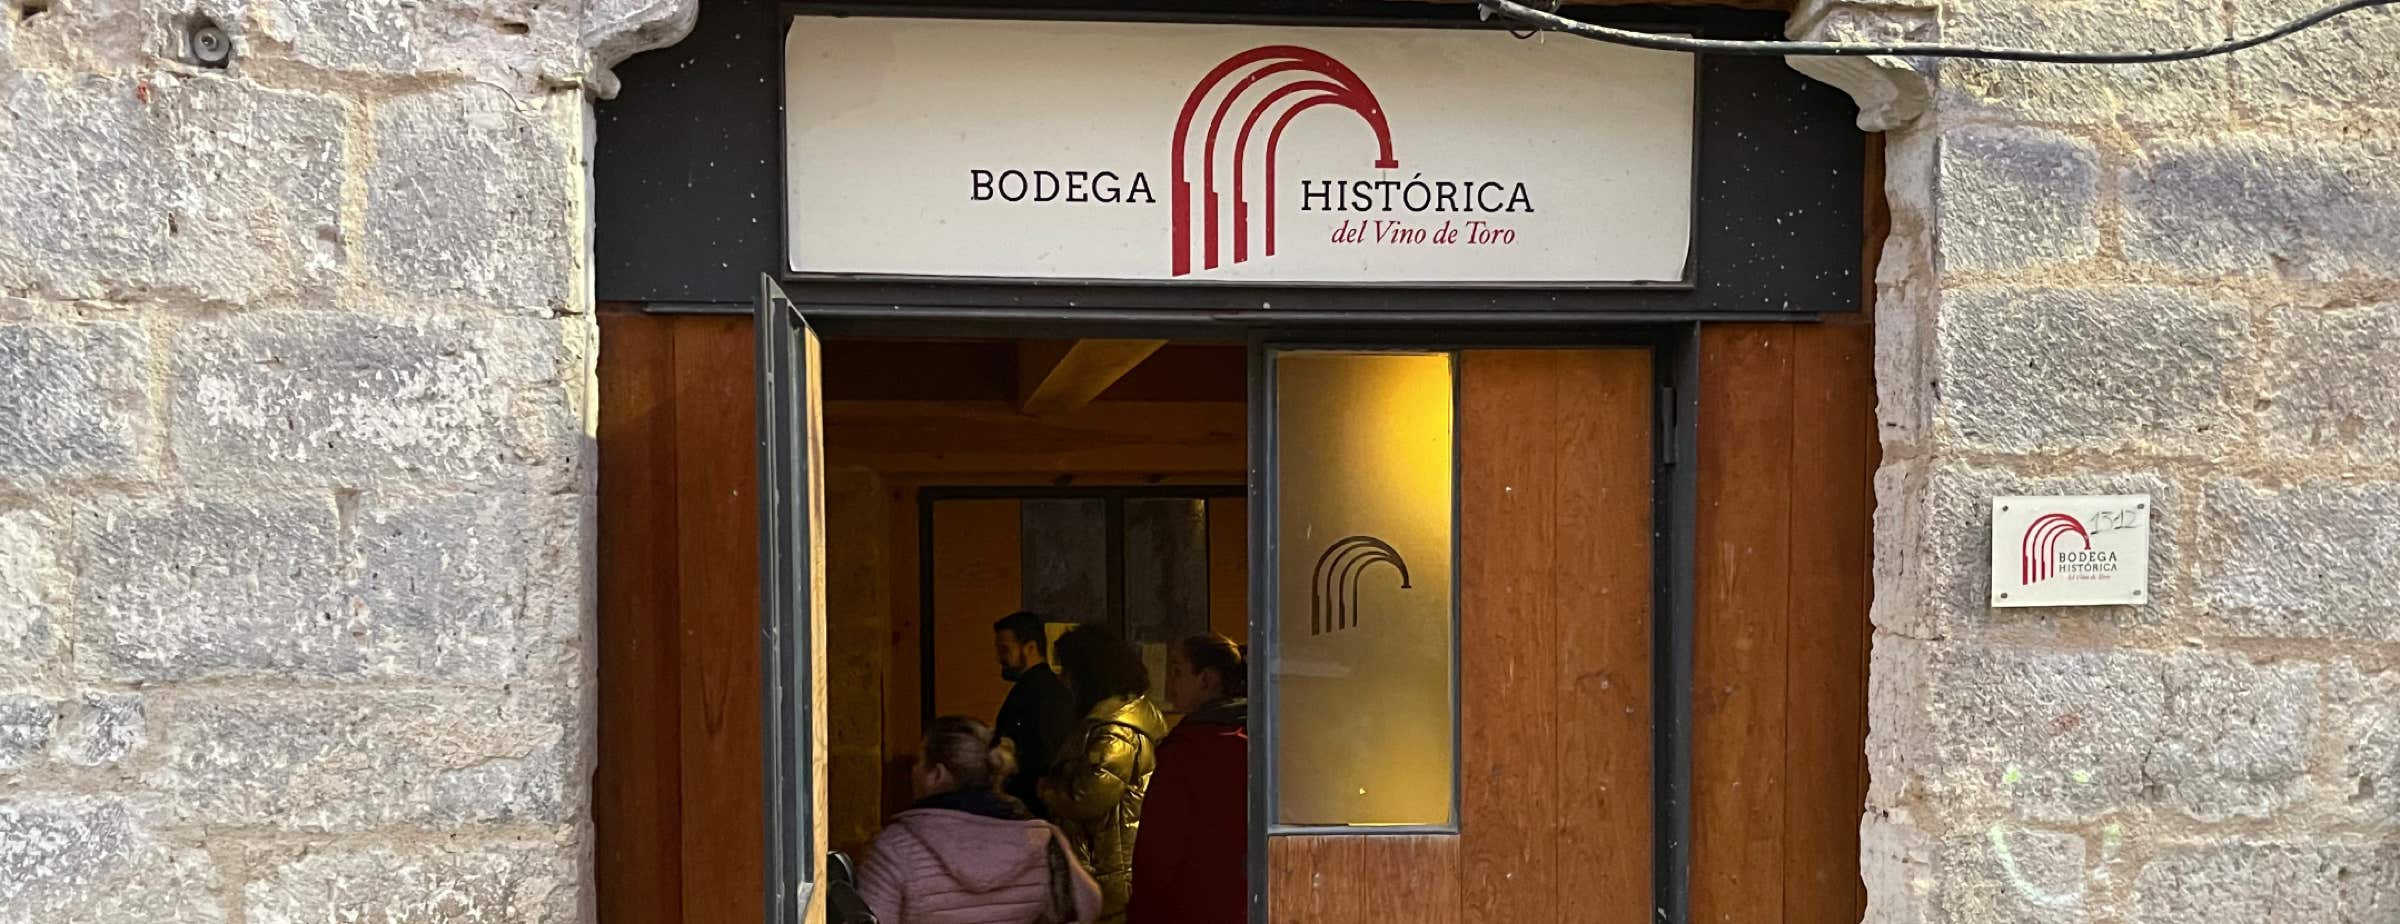 Εικόνα της εισόδου του Bodega Histórica. Η είσοδος είναι μια ξύλινη πόρτα. Πάνω από την είσοδο υπάρχει πινακίδα με την ένδειξη "Bodega Histórica del Vino de Toro". Η πόρτα είναι ανοιχτή και φαίνονται άνθρωποι στο εσωτερικό της. Δίπλα στην πόρτα, διακρίνονται τμήματα της γκρίζας πέτρινης πρόσοψης.